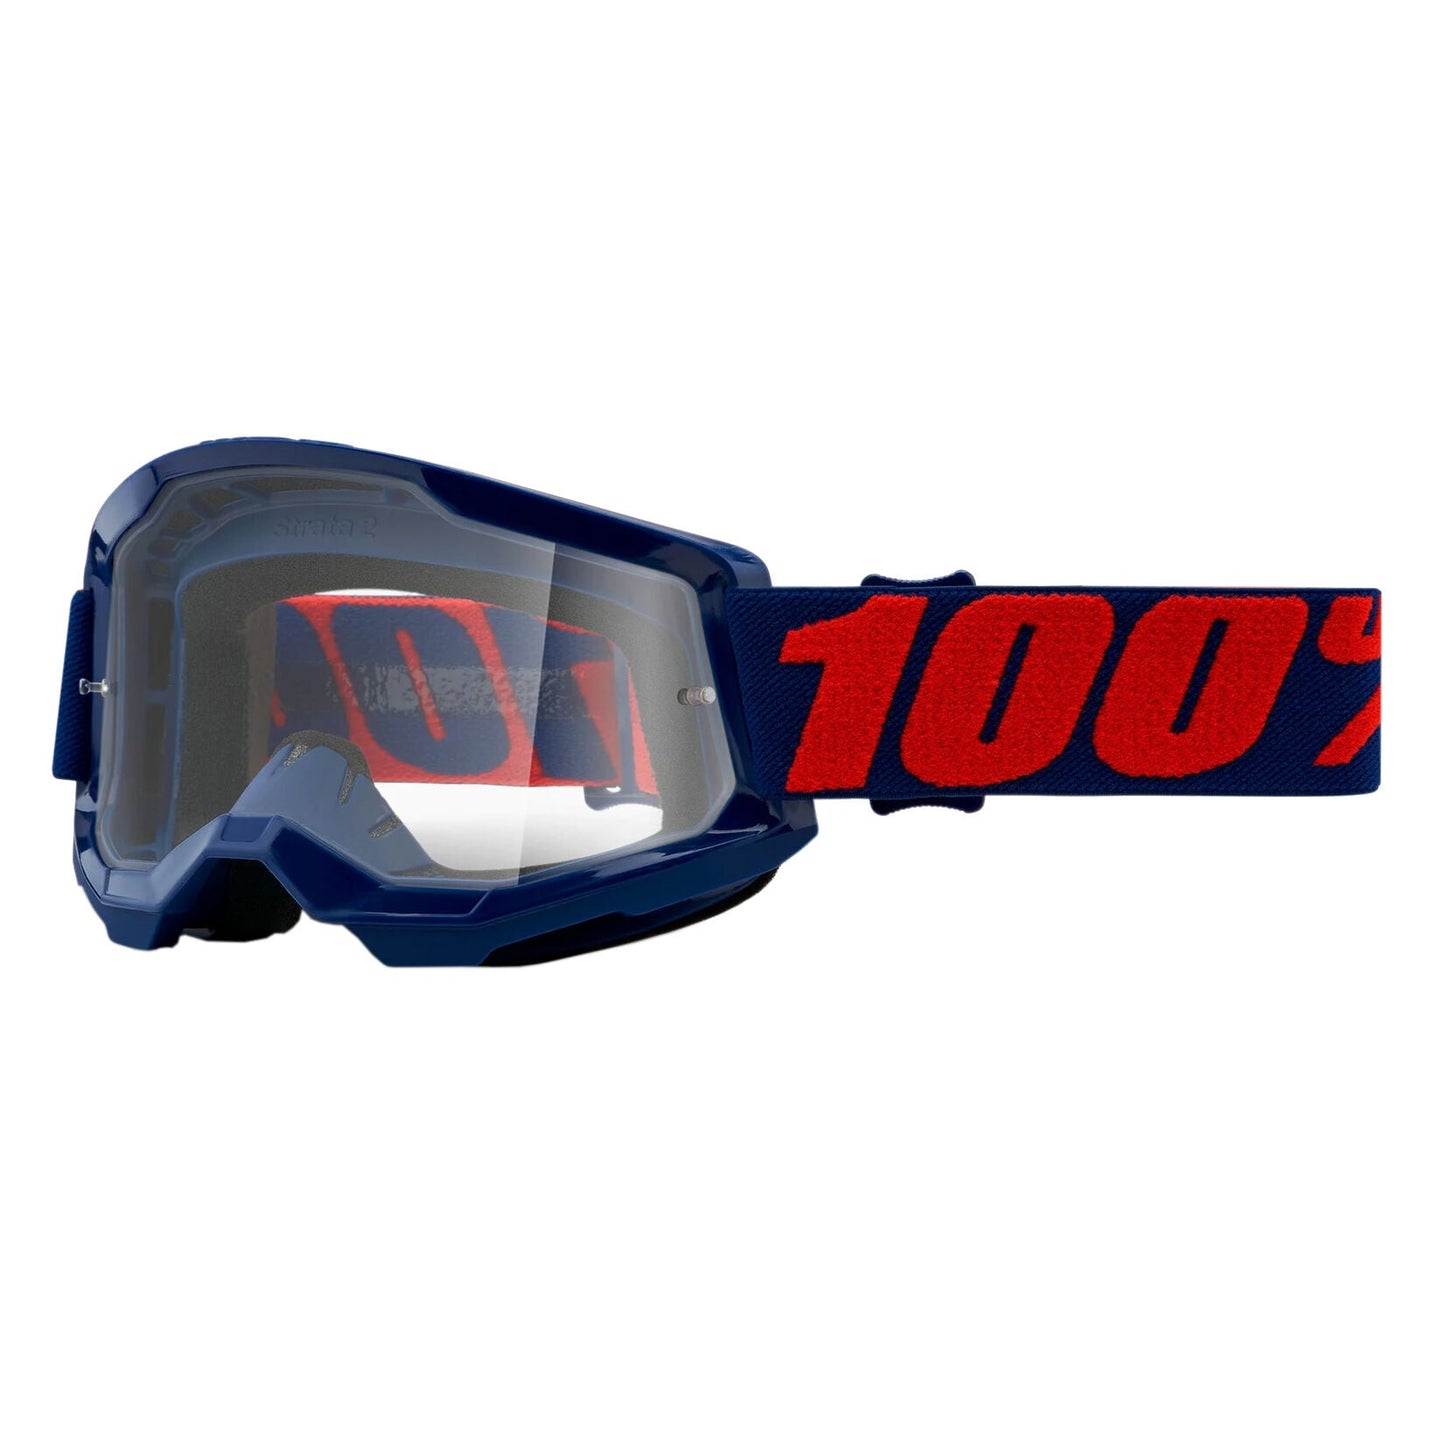 100% Strata 2 2021 goggle